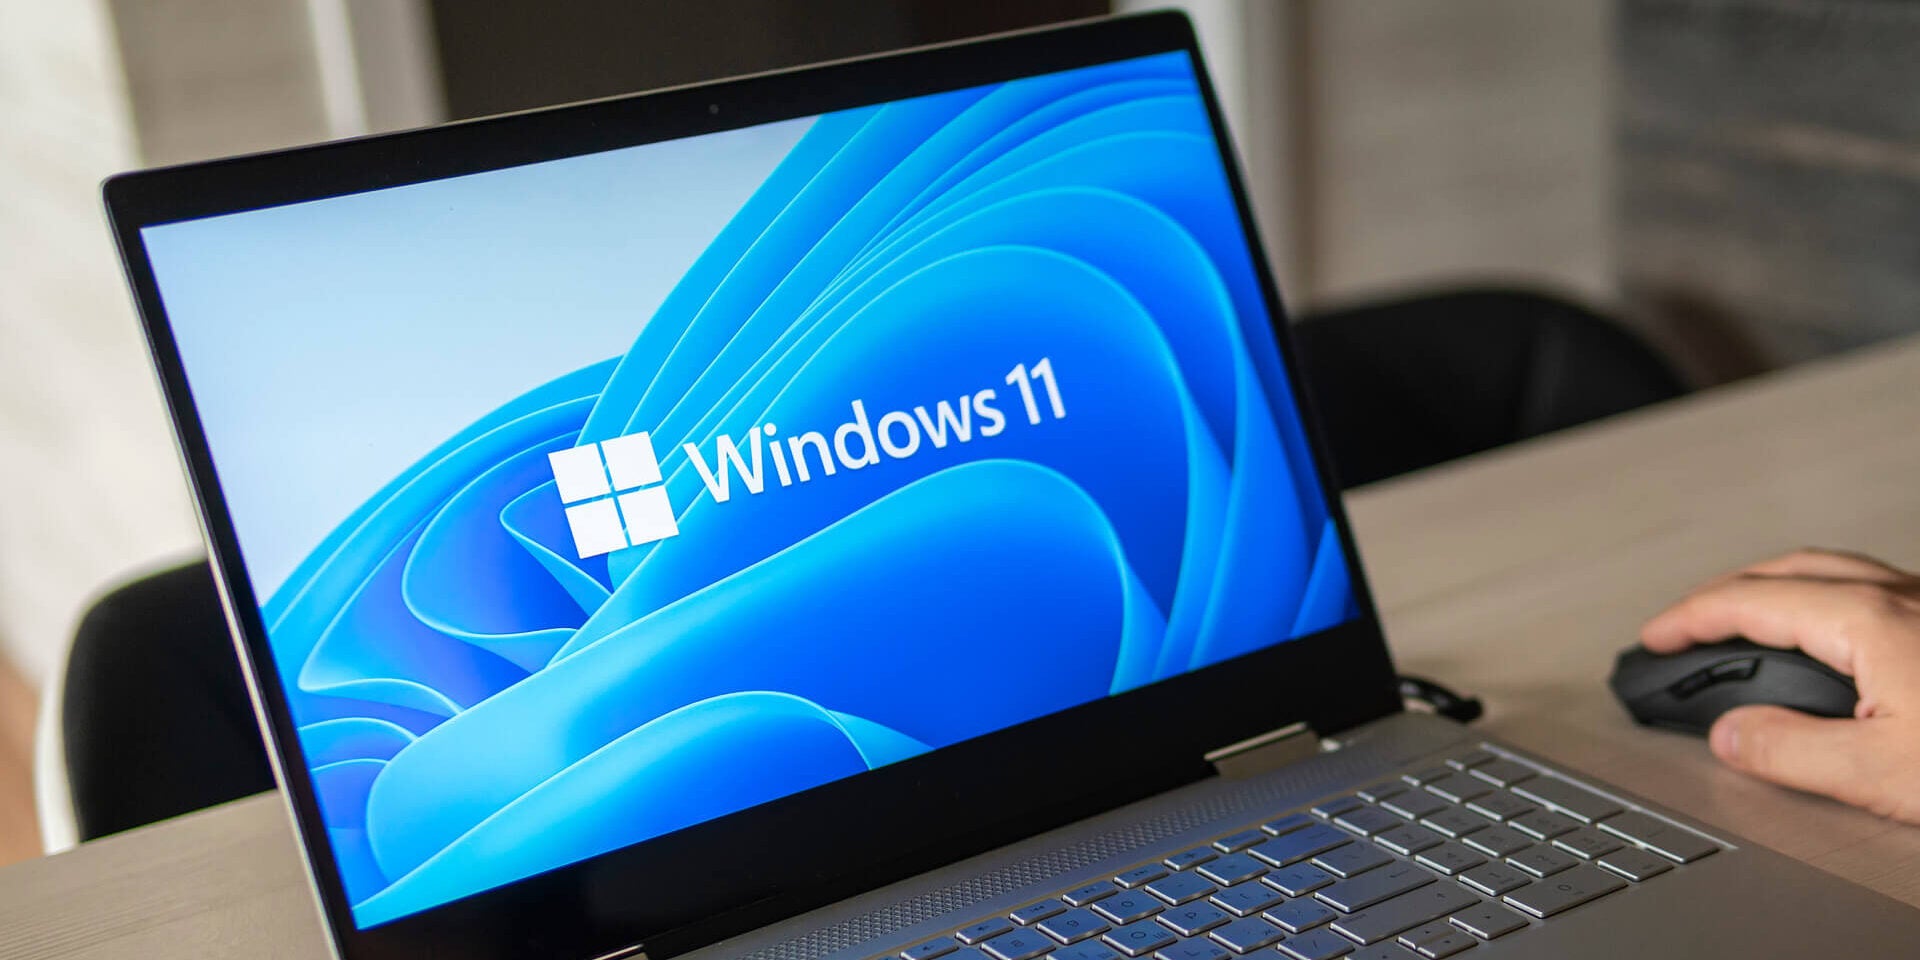 在工作環境中使用的筆記型電腦螢幕上運行的 Microsoft Windows 11 徽標